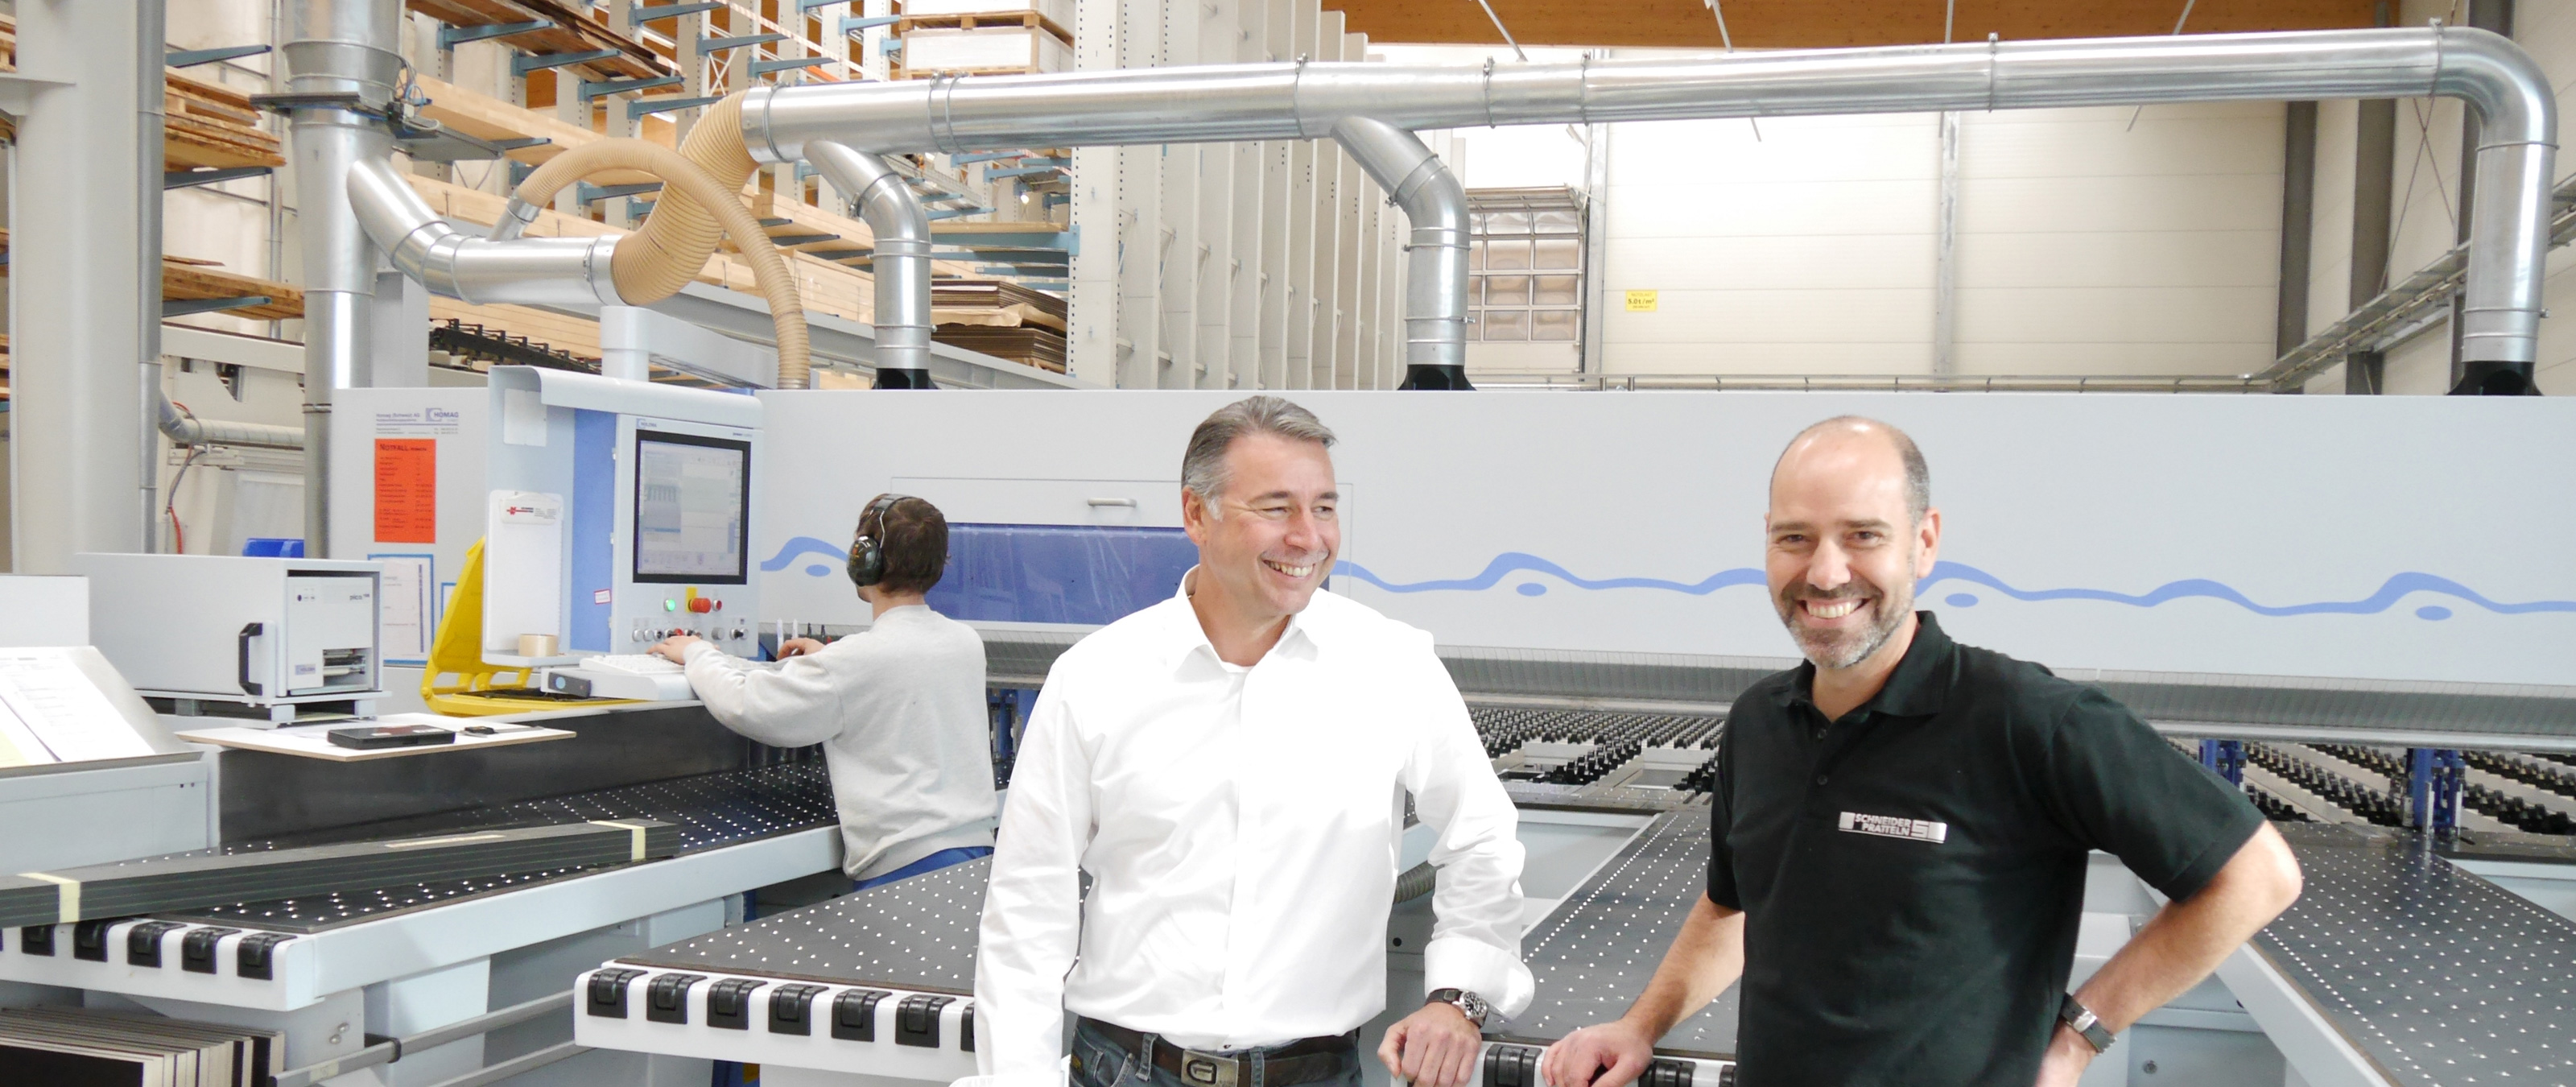 Die Schneider Holding AG bei Basel macht keine Kompromisse. Das Unternehmen setzt auf Perfektion und baut seine Produktion komplett neu auf – mit Maschinen der HOMAG Group.